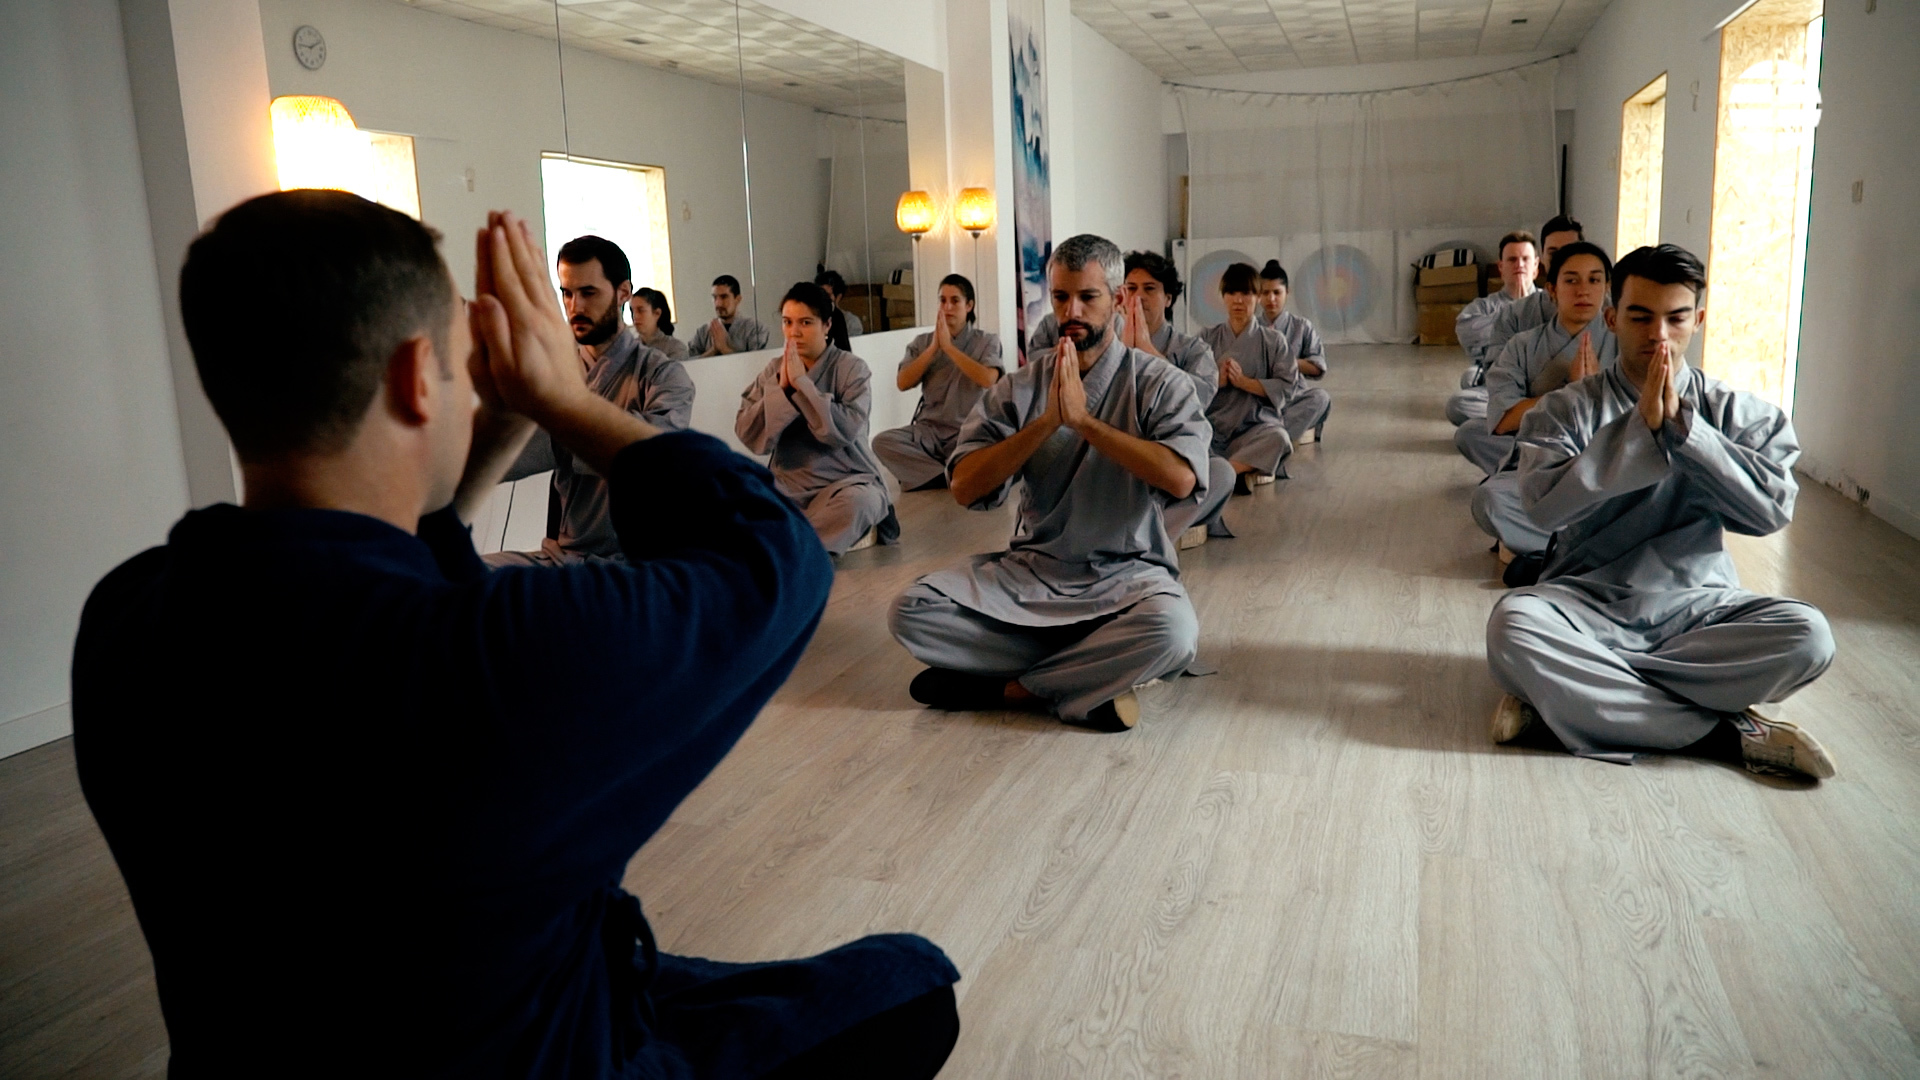 El maestro dirige una clase de chi kung, tambin conocido como qi gong.